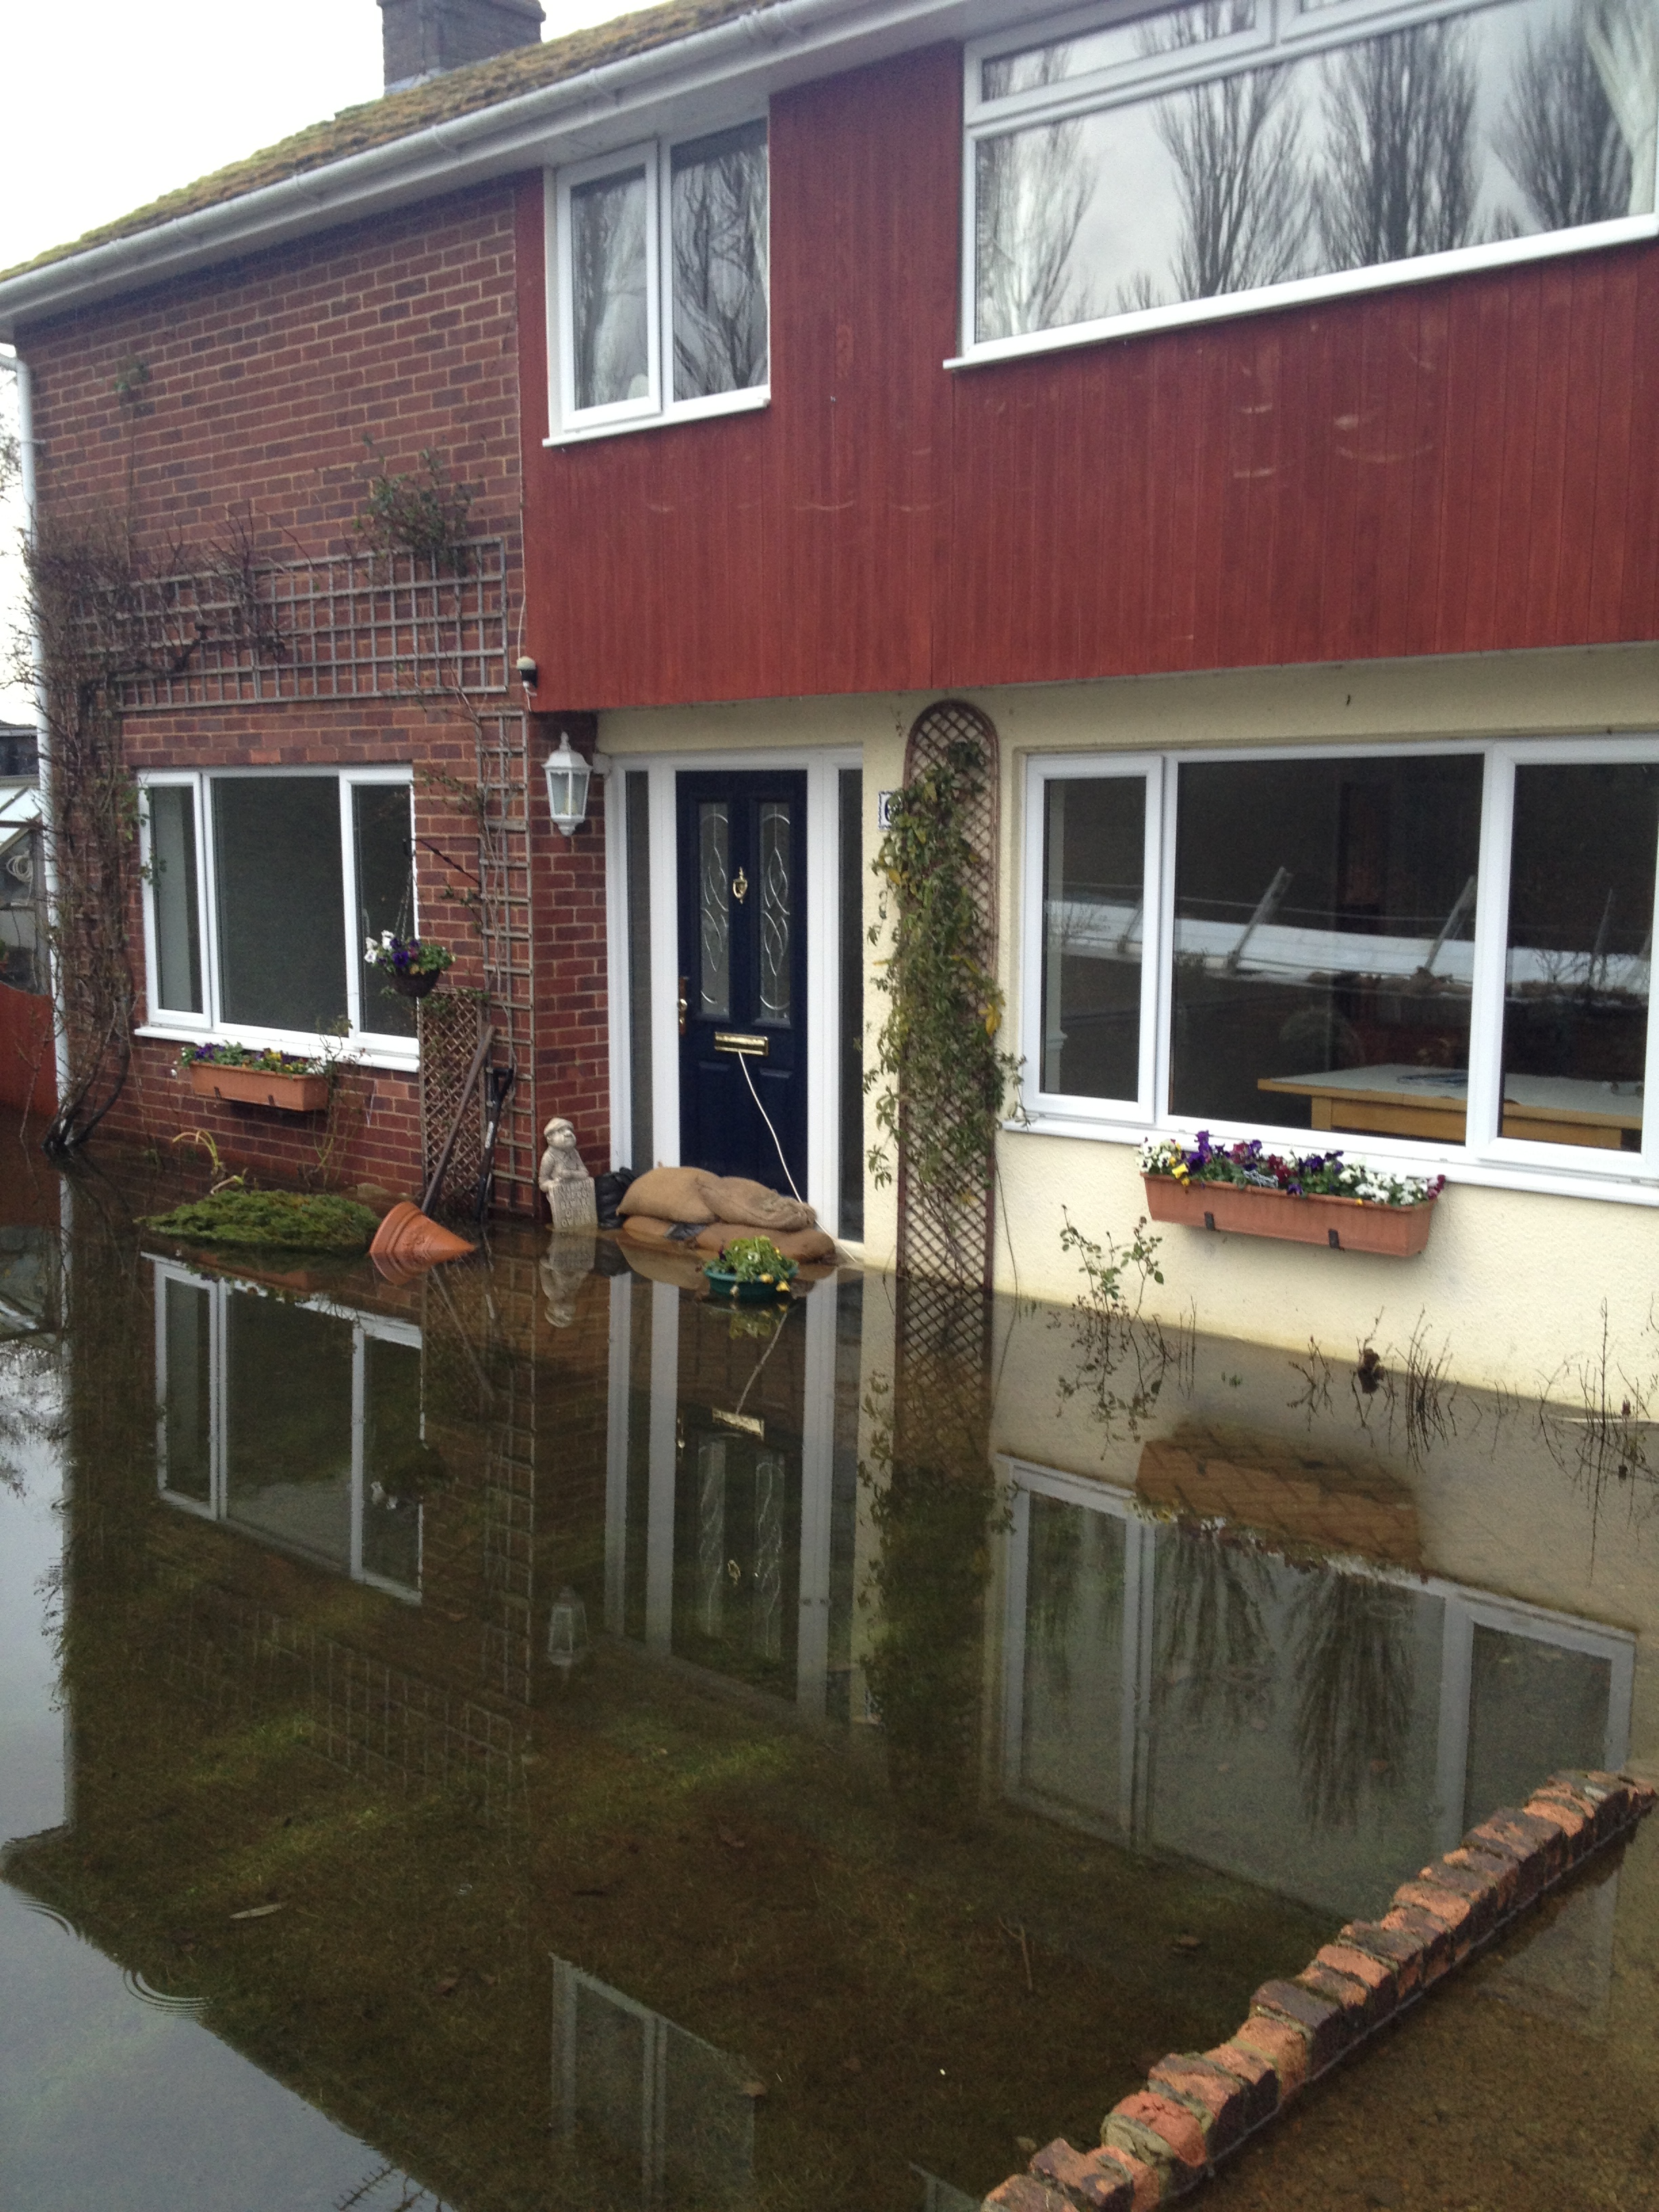 Romsey floods Feb 2014